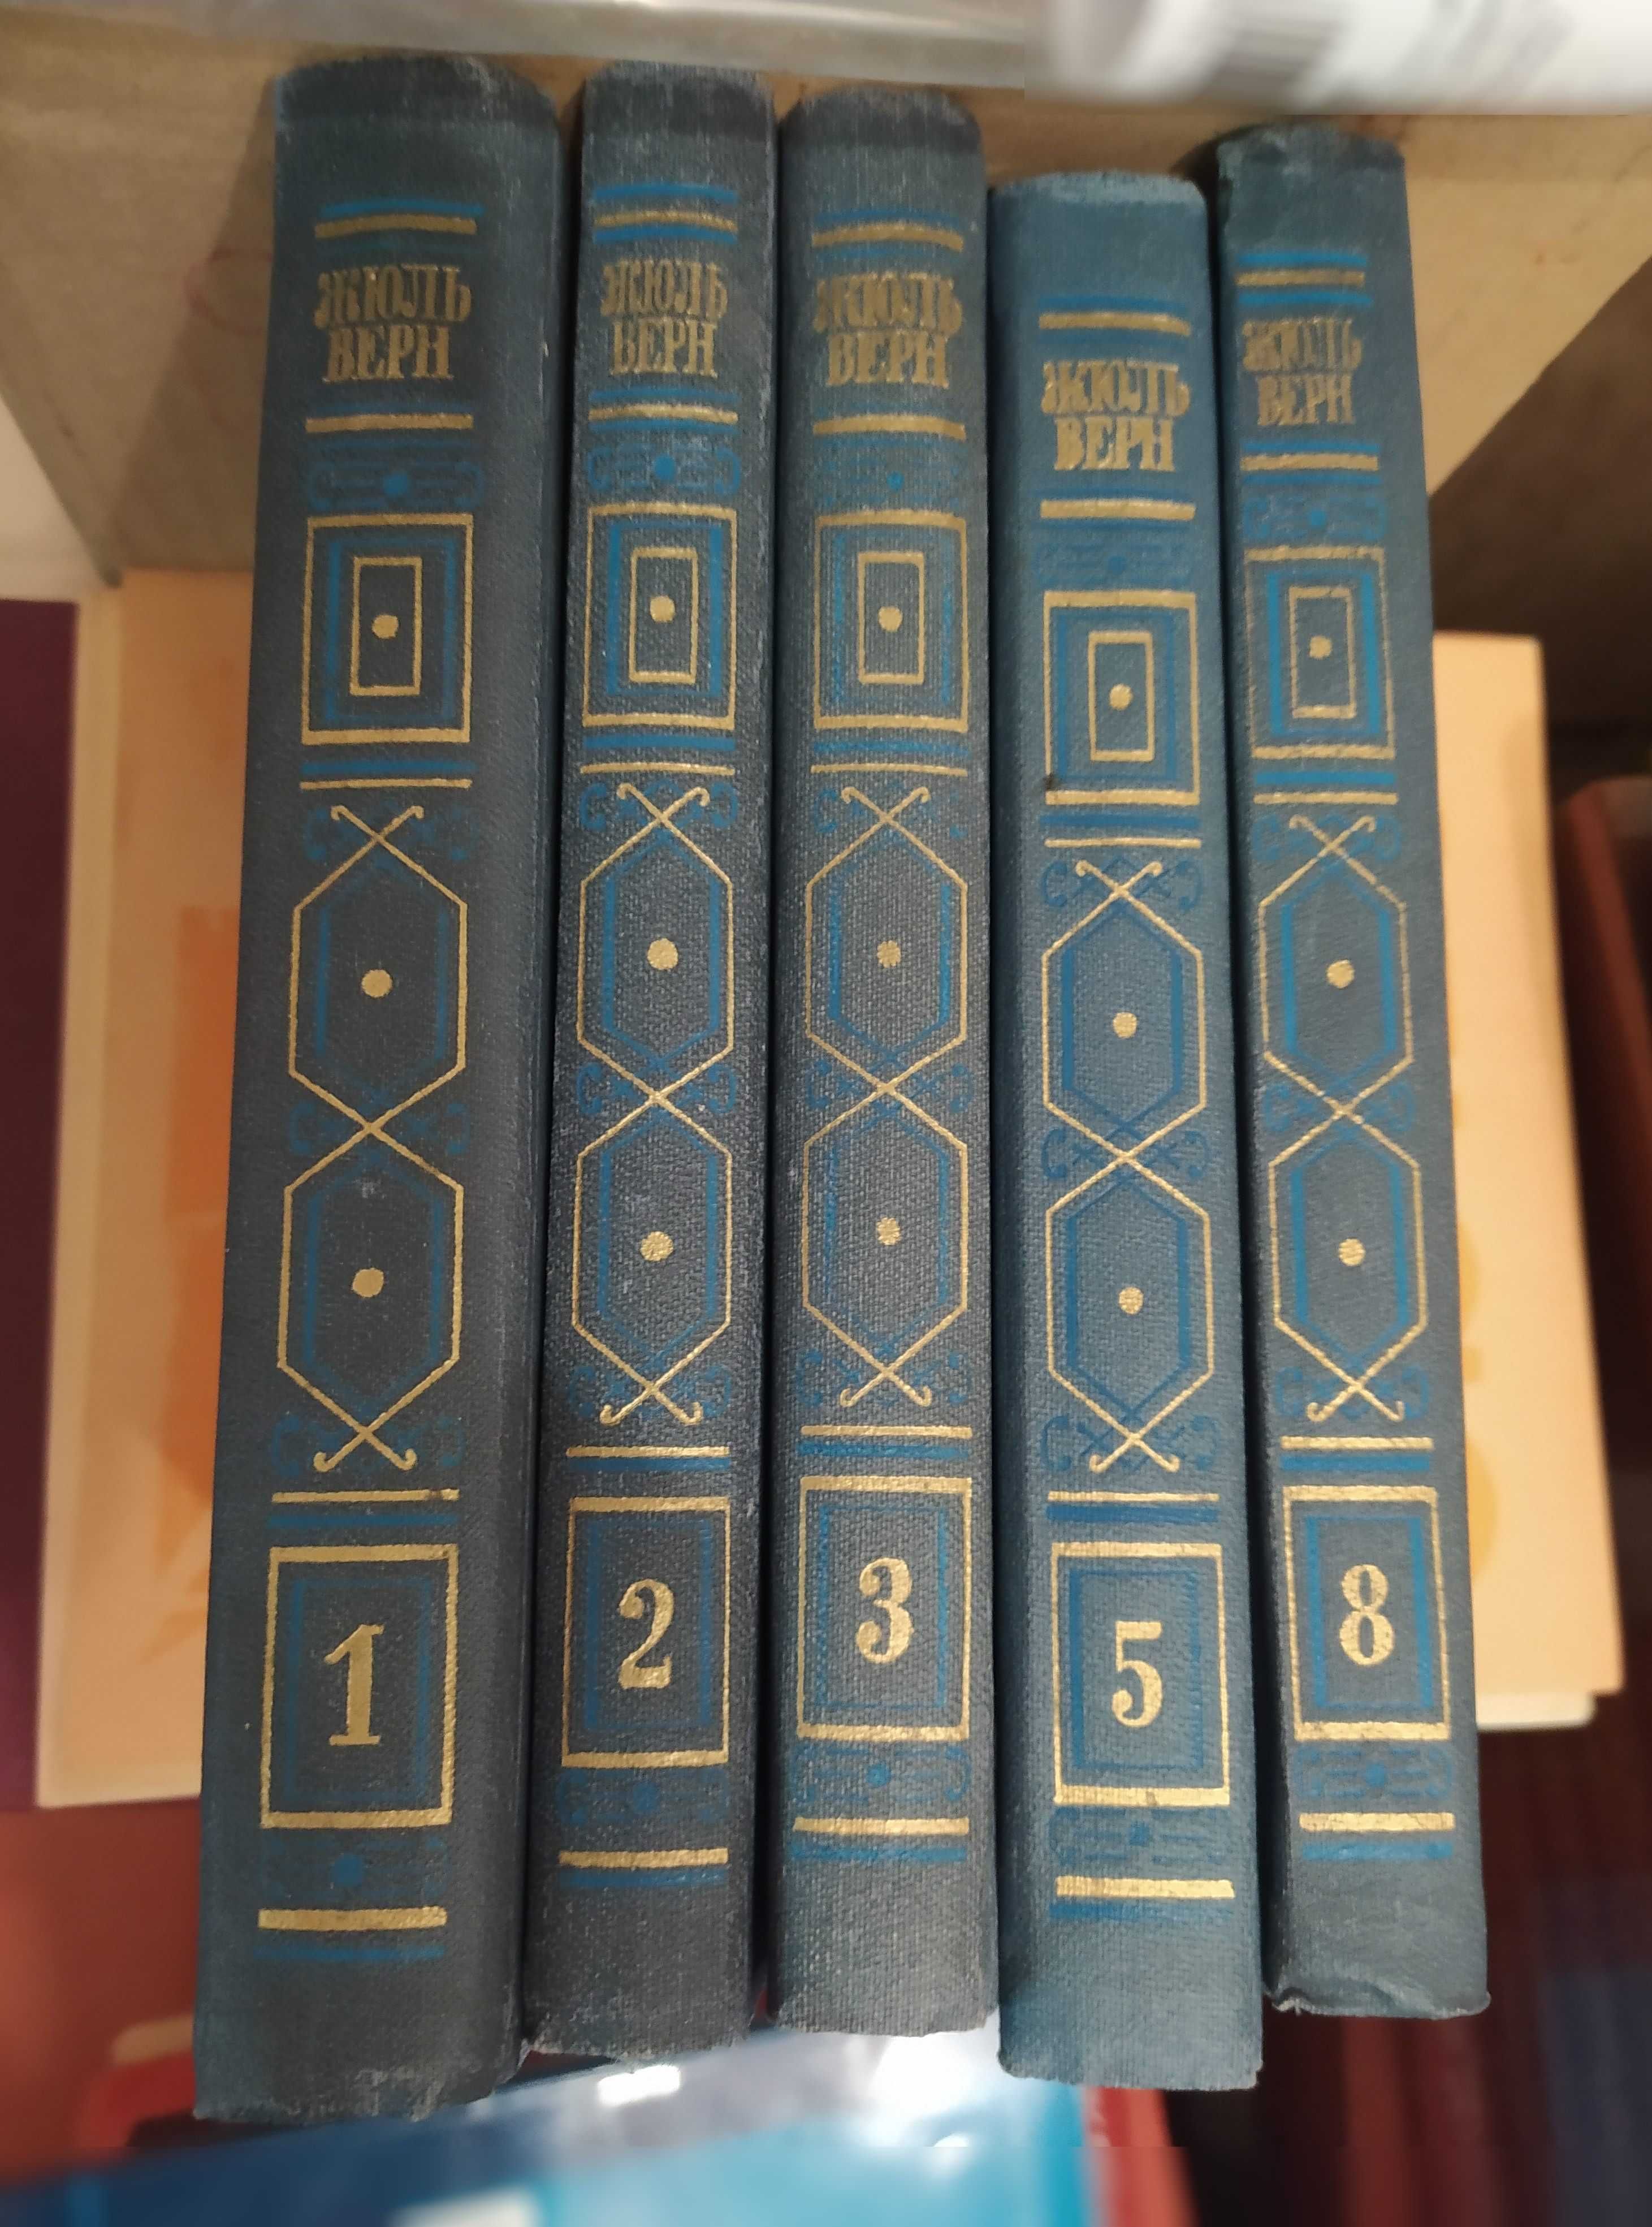 Жюль Верн. Собрание сочинений в 8 томах 1985. Только т. 1, 2, 3, 5 и 8